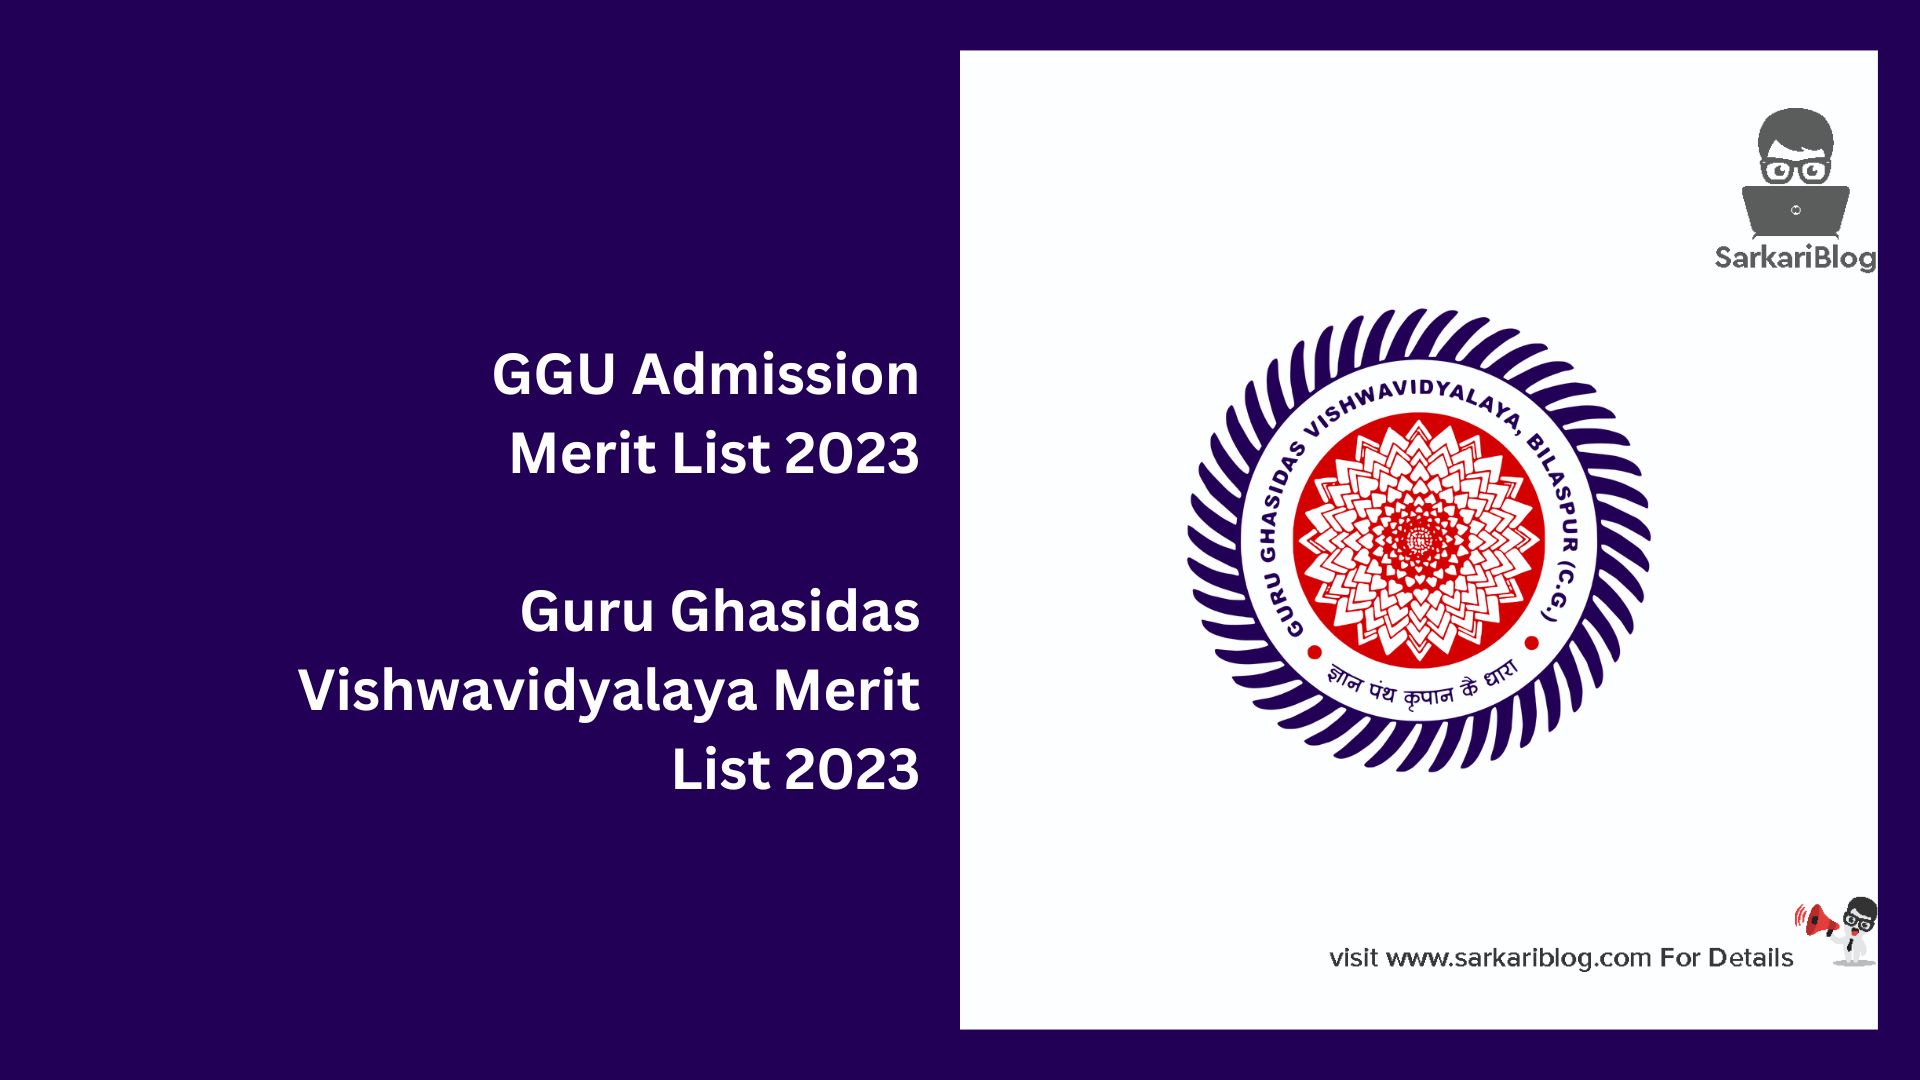 GGU Admission Merit List 2023